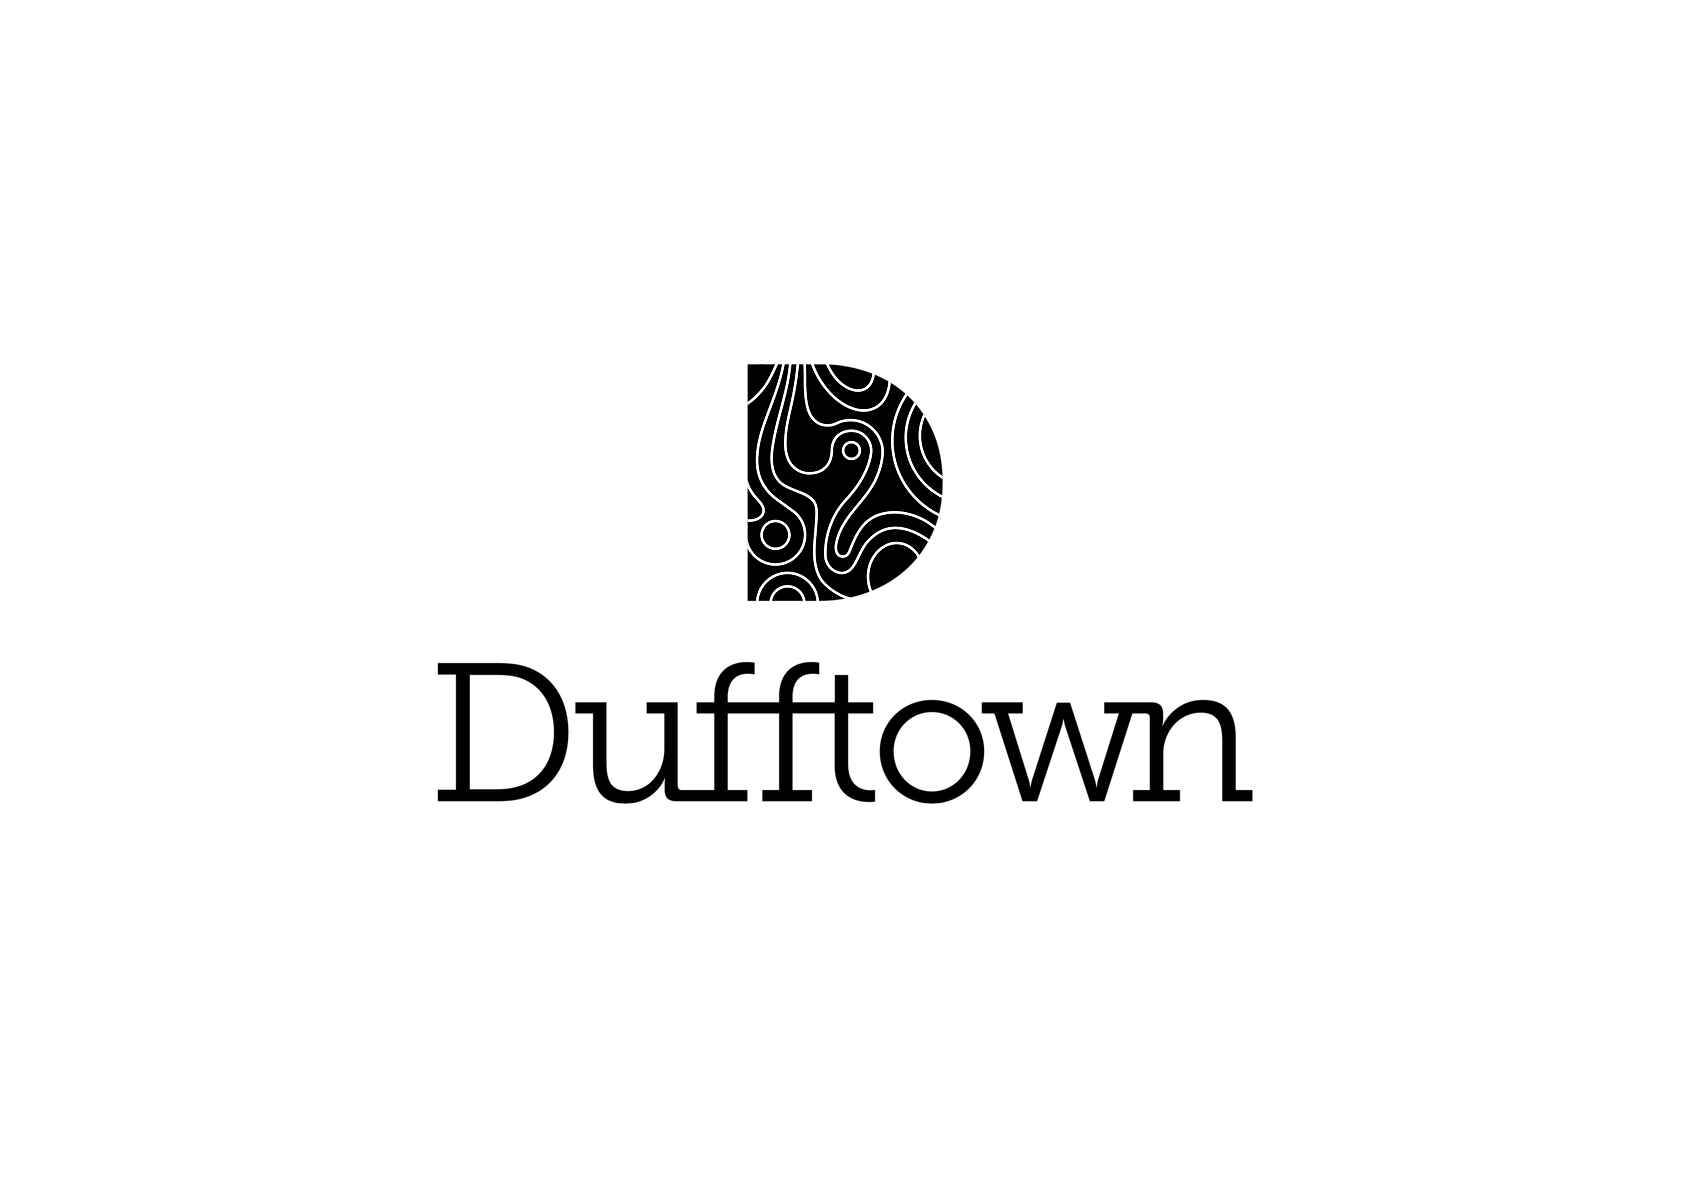 Destination Dufftown brand marque - lockup - black